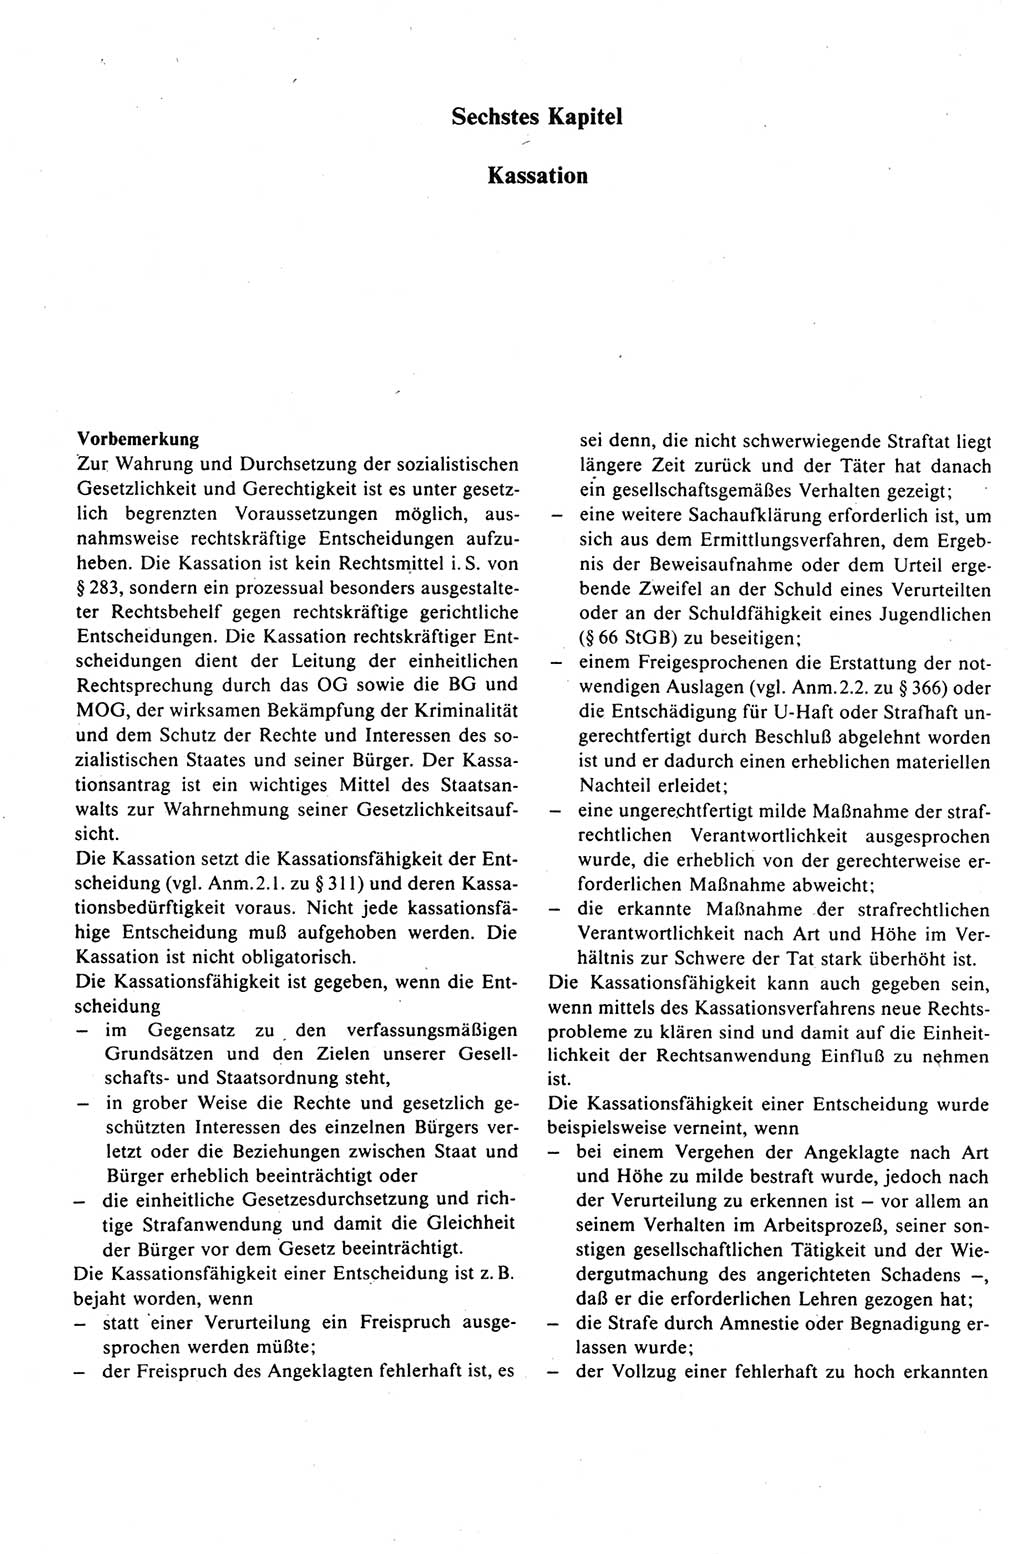 Strafprozeßrecht der DDR (Deutsche Demokratische Republik), Kommentar zur Strafprozeßordnung (StPO) 1989, Seite 362 (Strafprozeßr. DDR Komm. StPO 1989, S. 362)